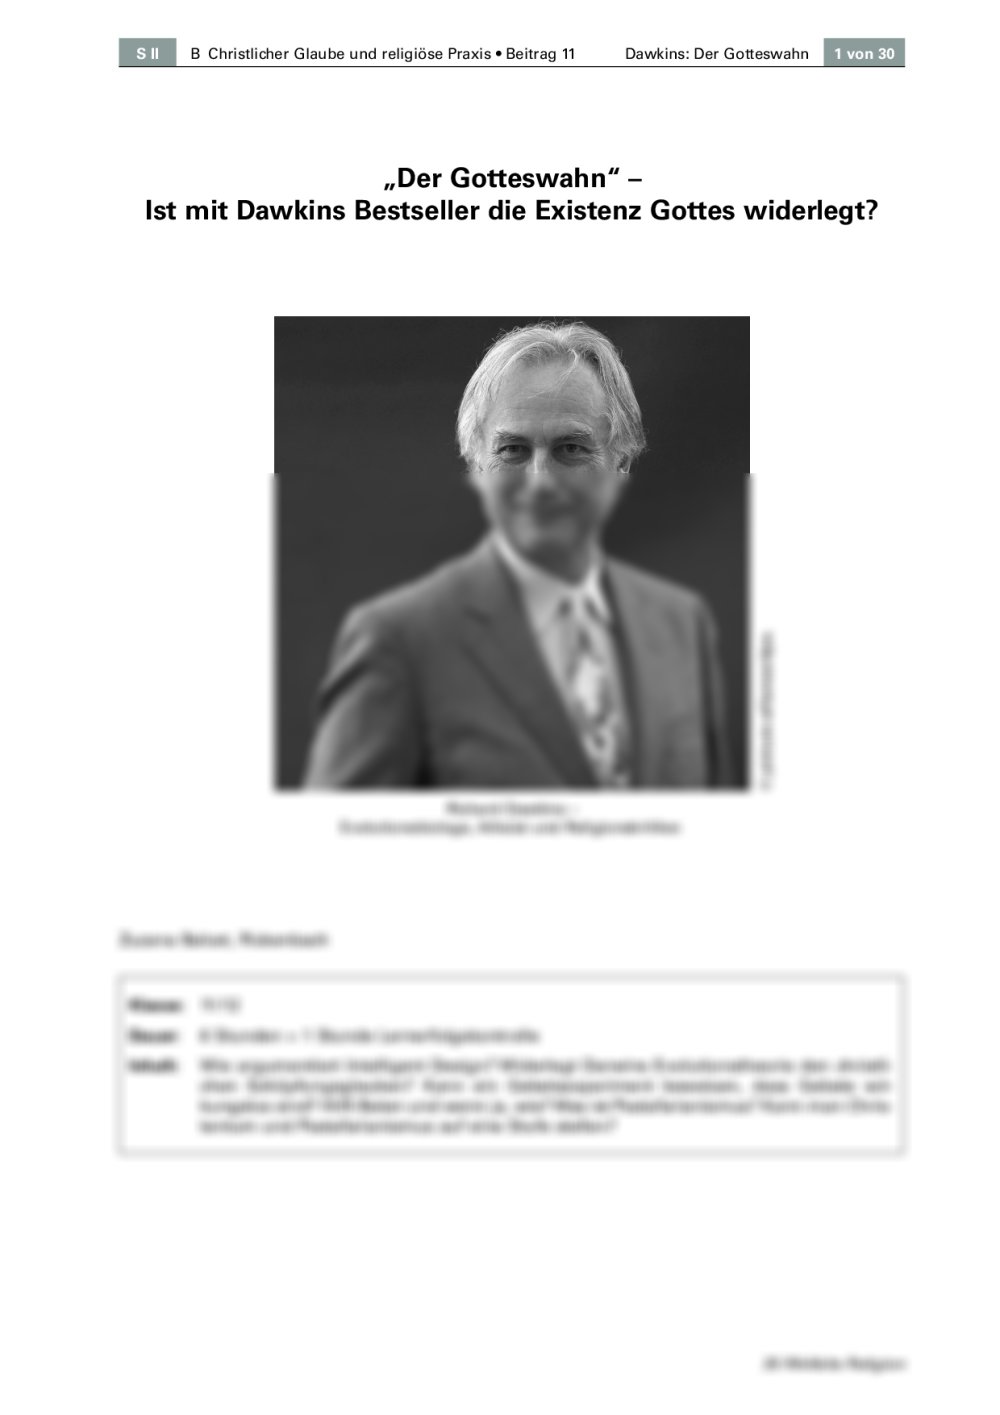 Ist mit Dawkins Bestseller die Existenz Gottes widerlegt? - Seite 1